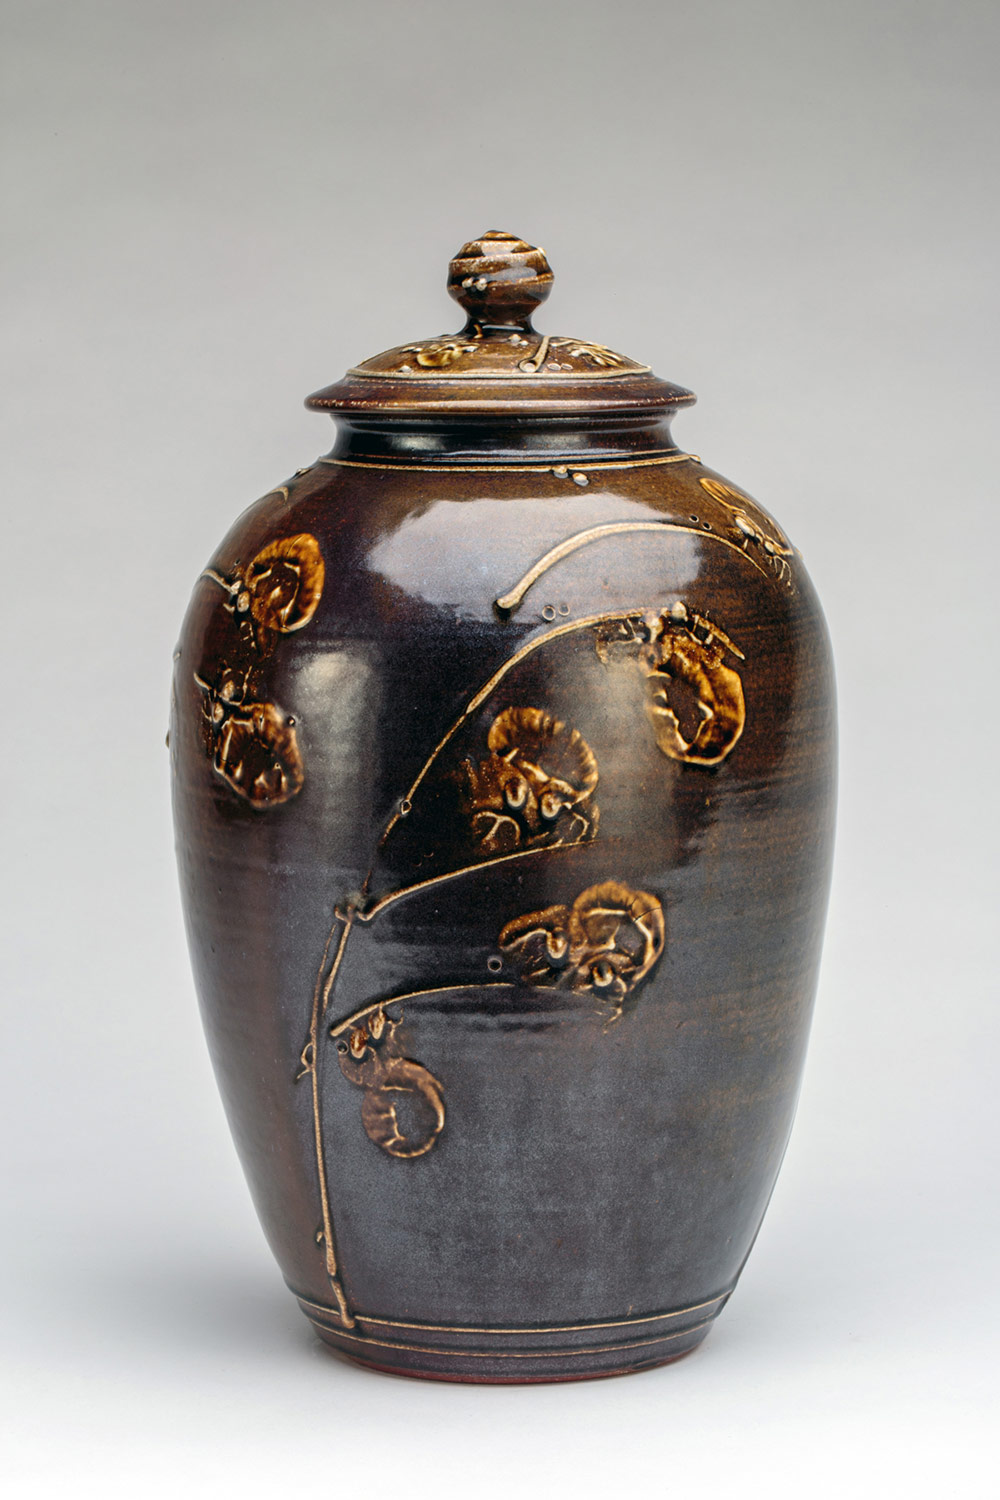 Brown jar with floral designs